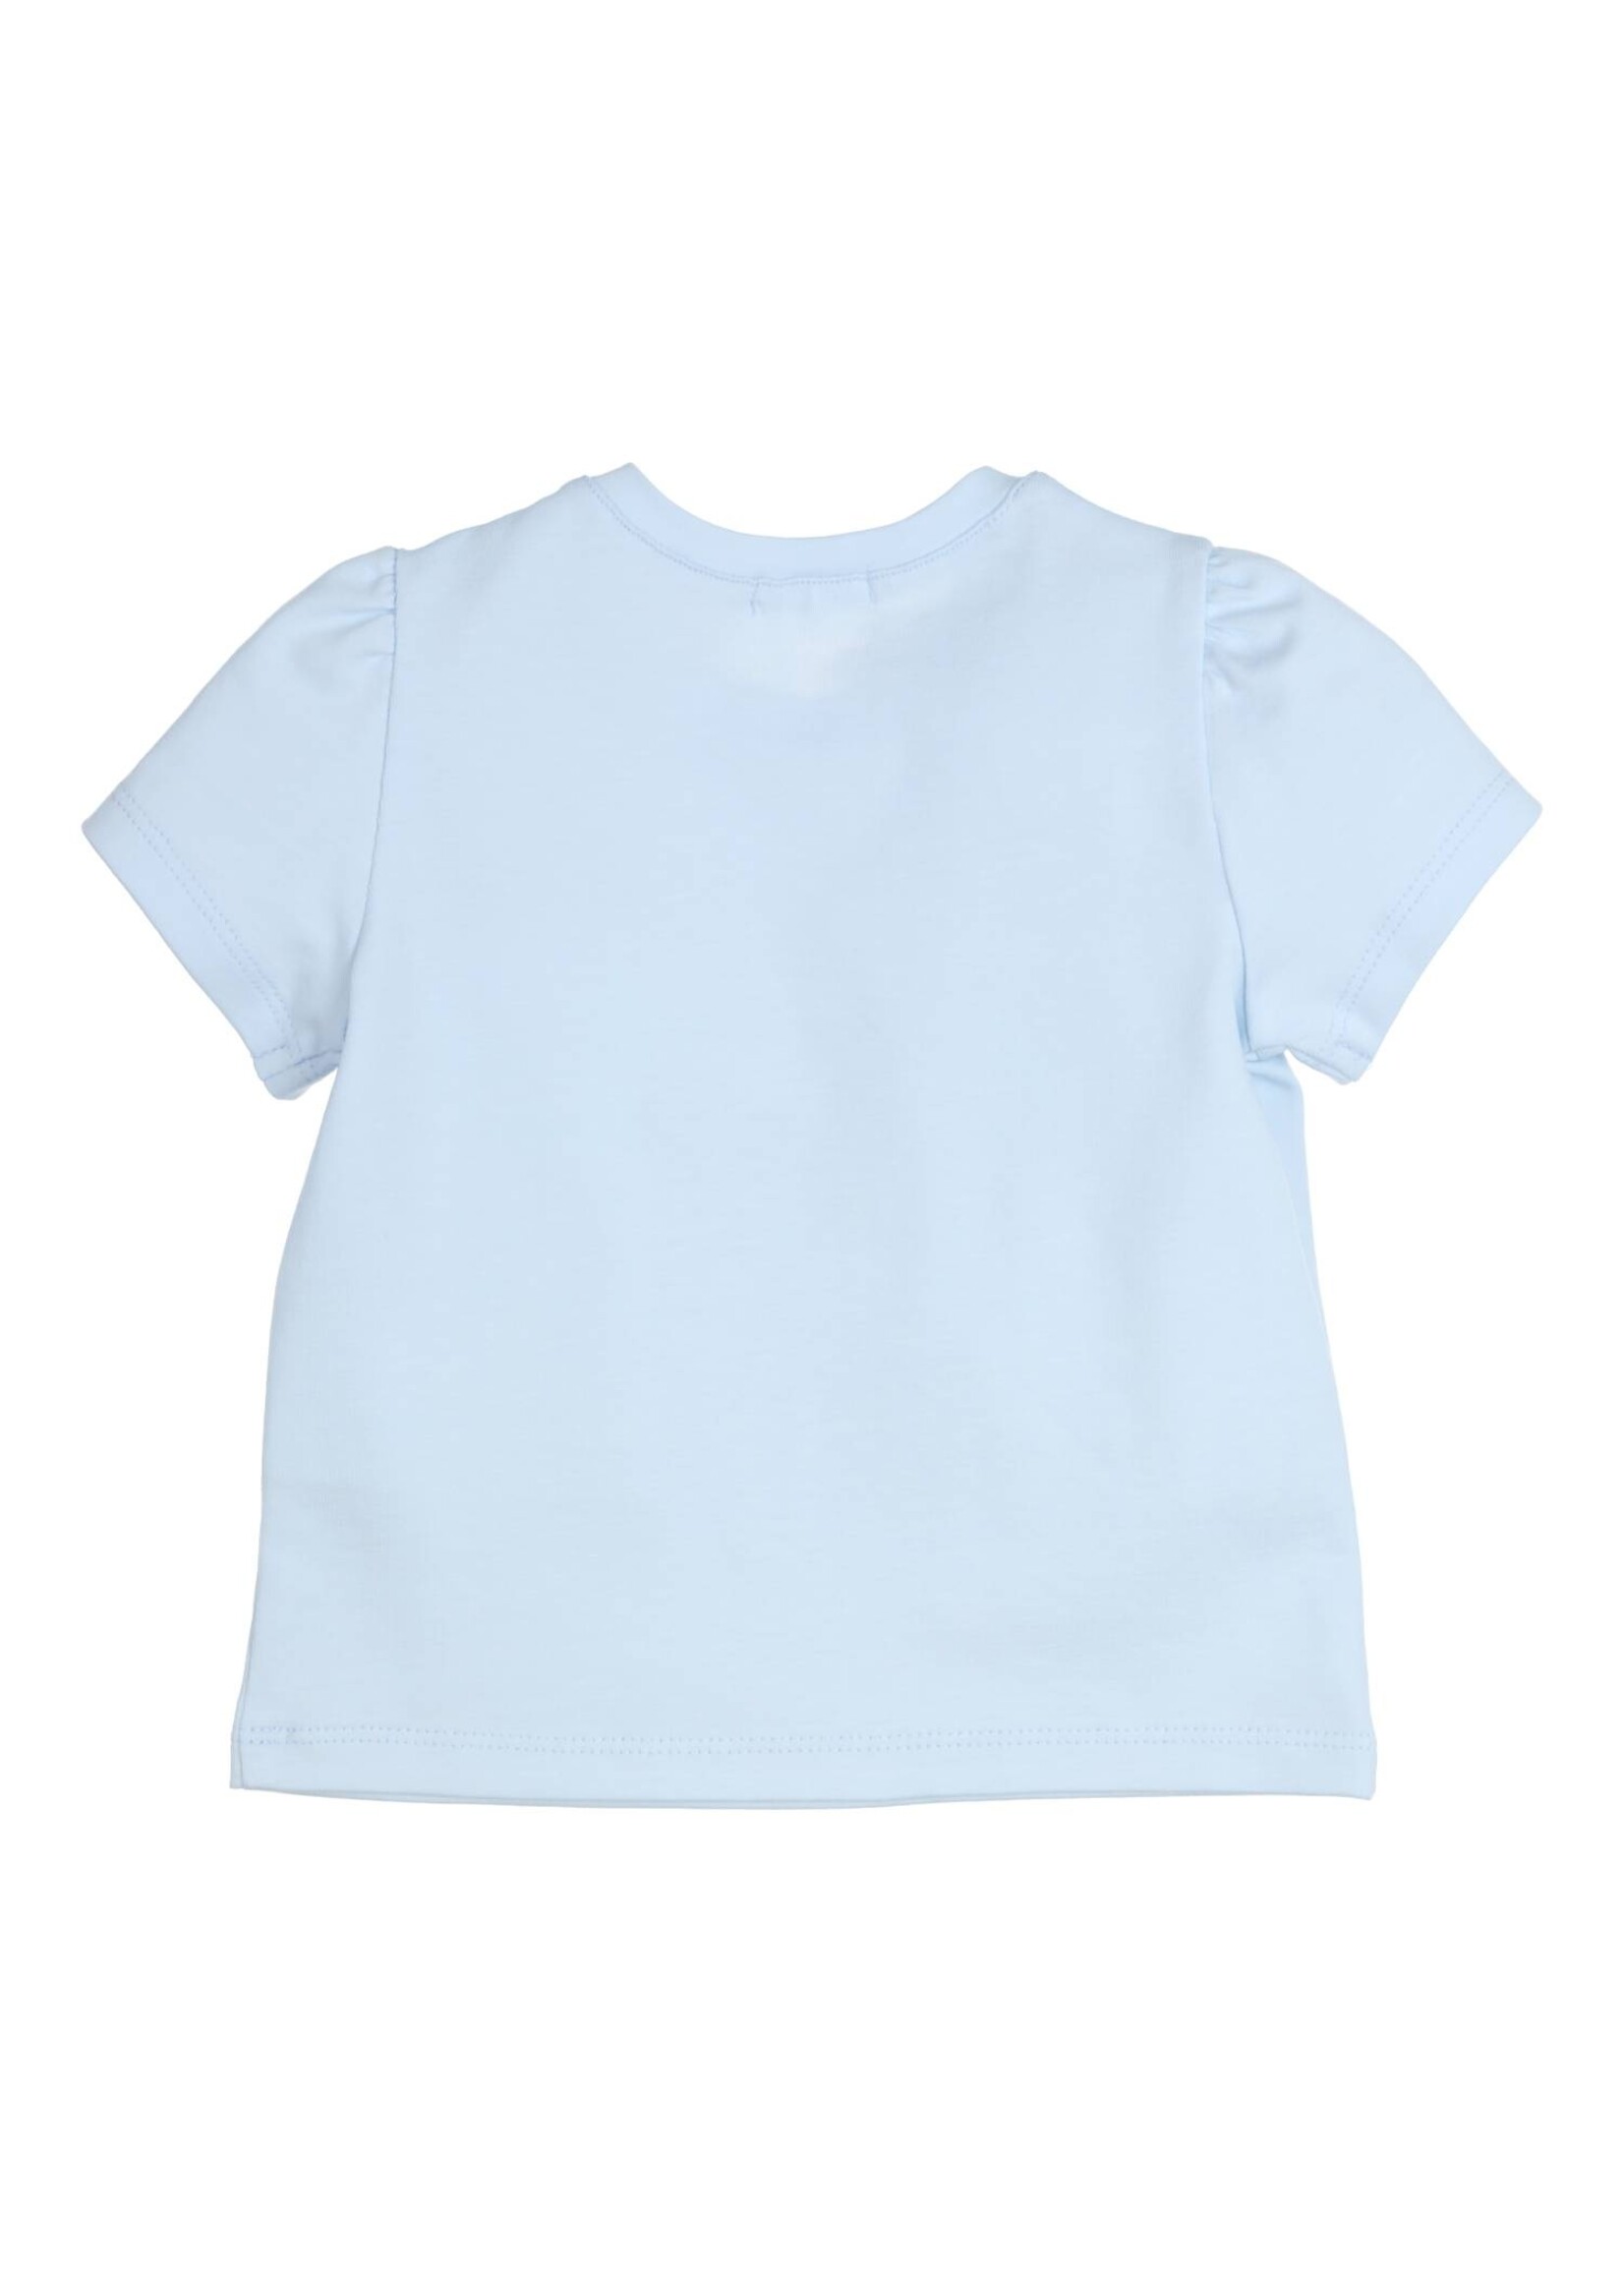 Gymp Girls T-shirt Aerobic Best Day Ever 353-4231-10 Light Blue